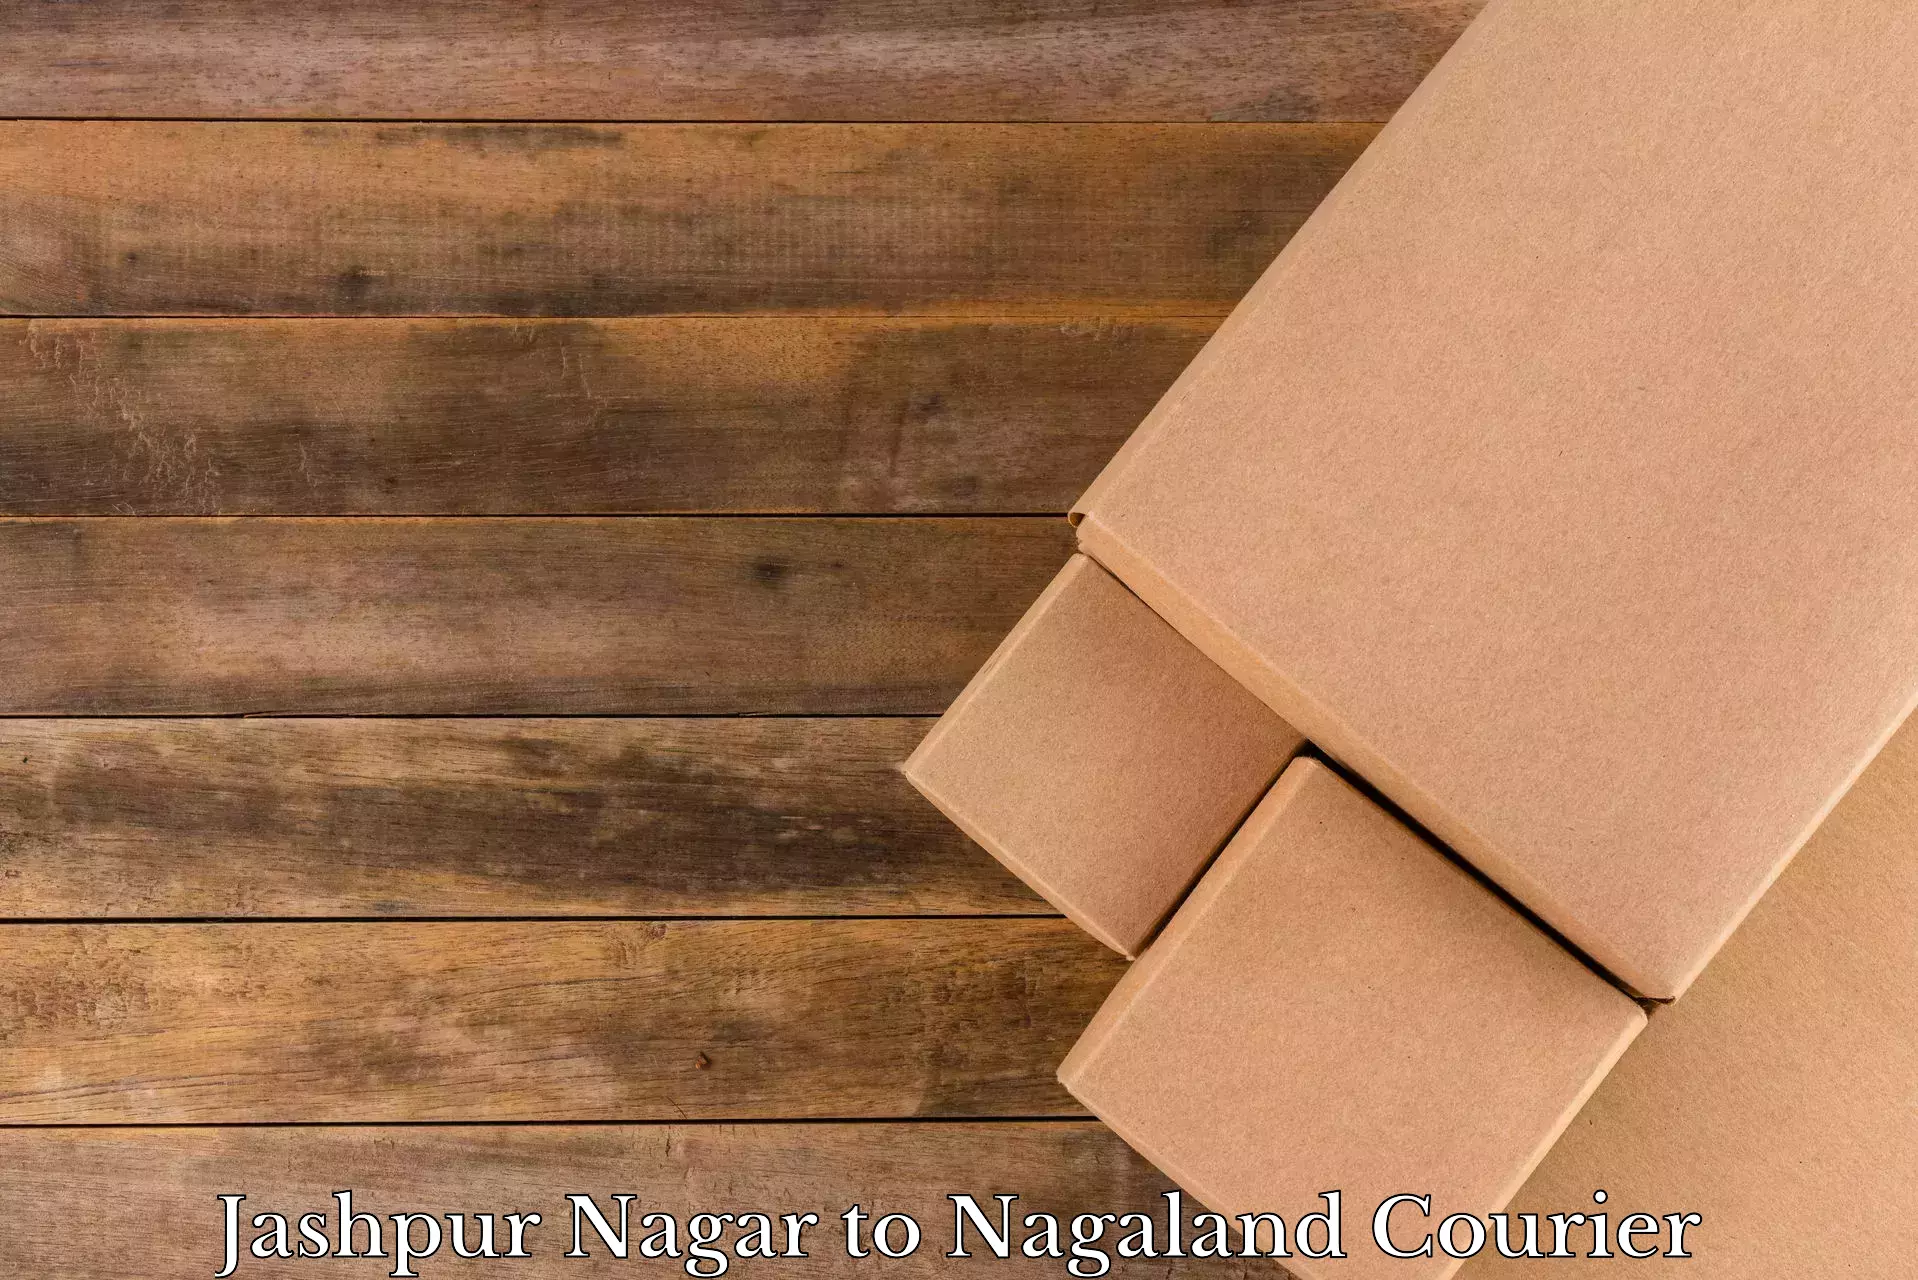 Furniture delivery service Jashpur Nagar to Longleng